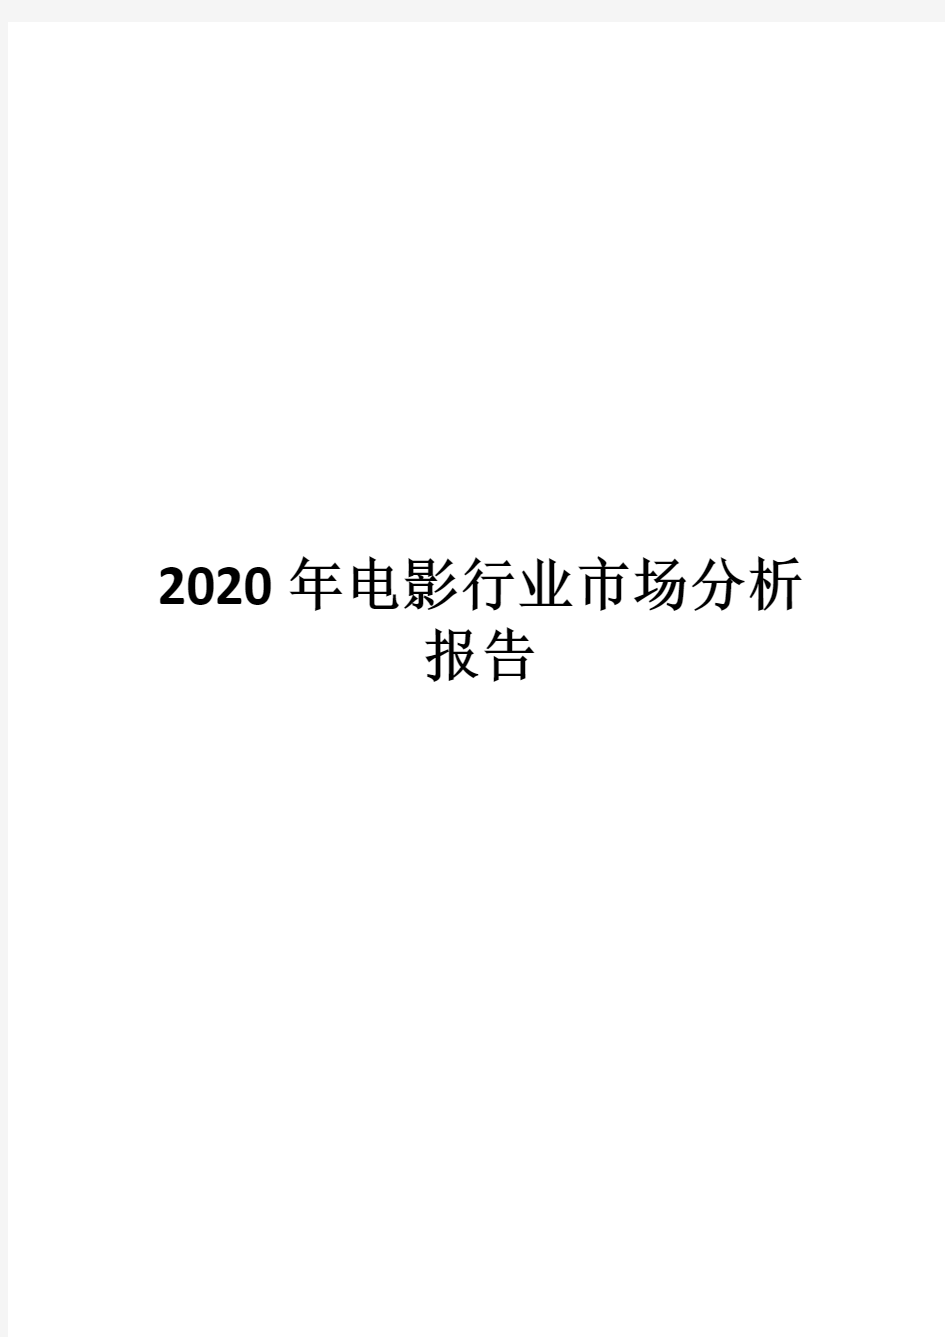 2020年电影行业市场分析报告